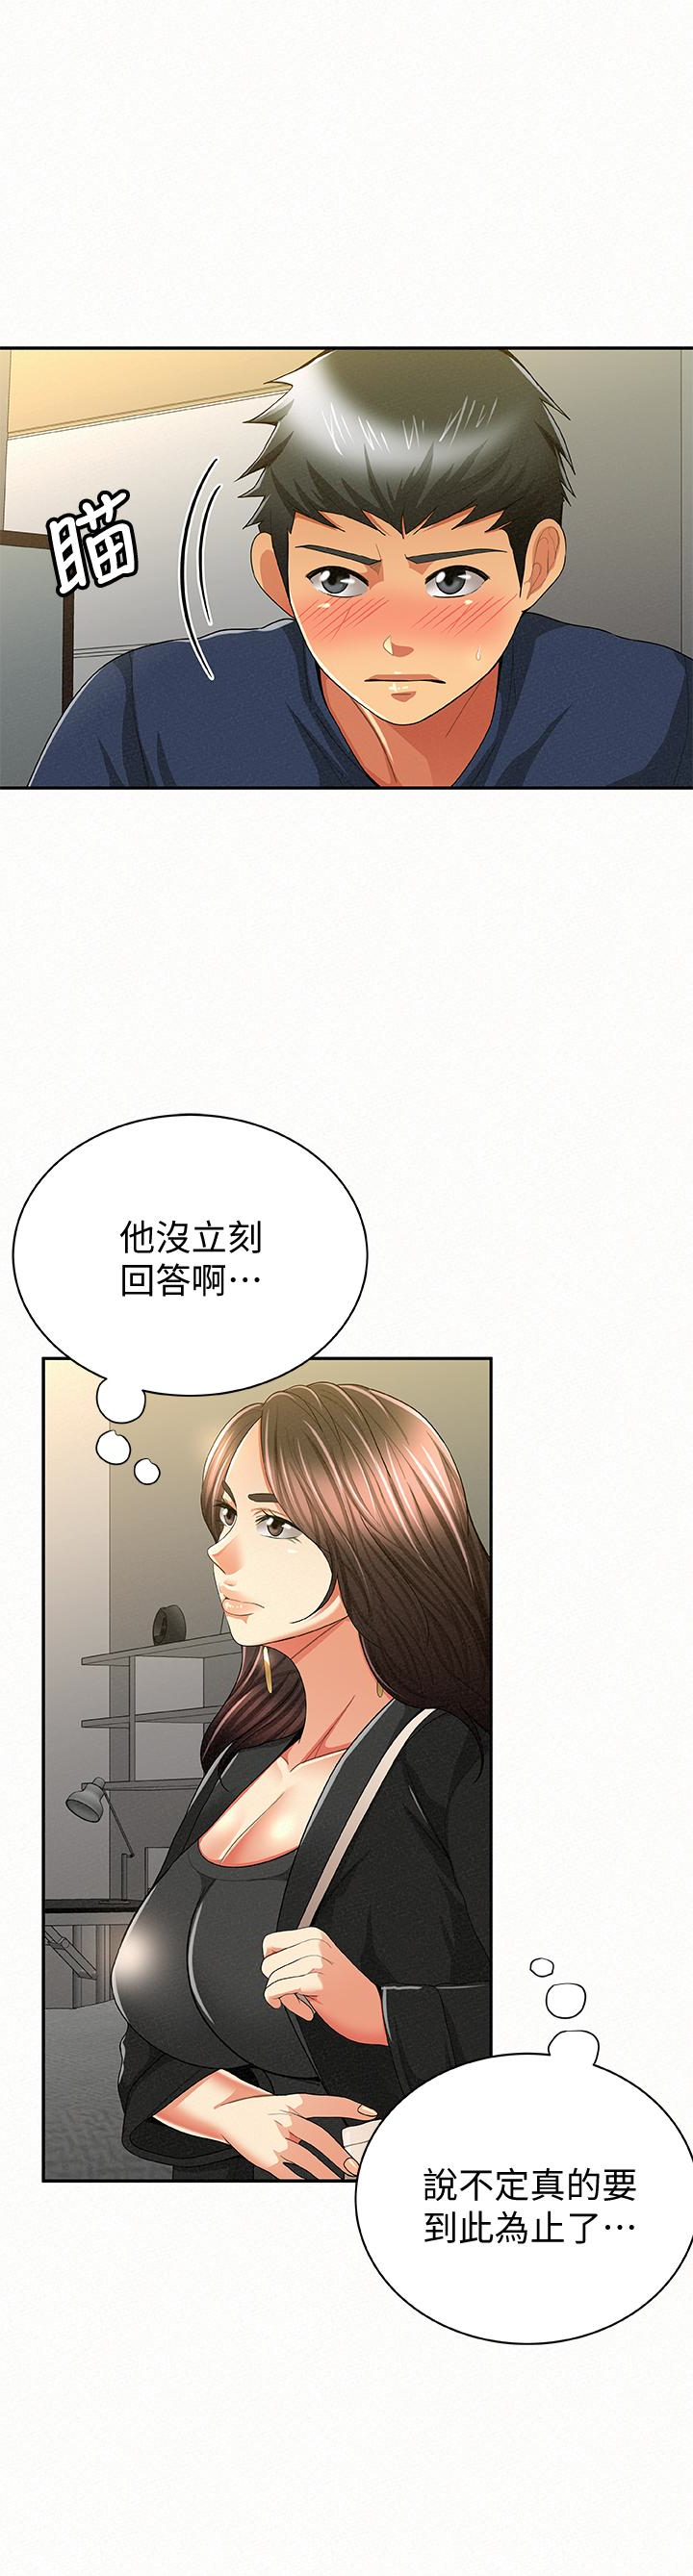 韩国污漫画 報告夫人 第40话-最后来一炮吧? 13